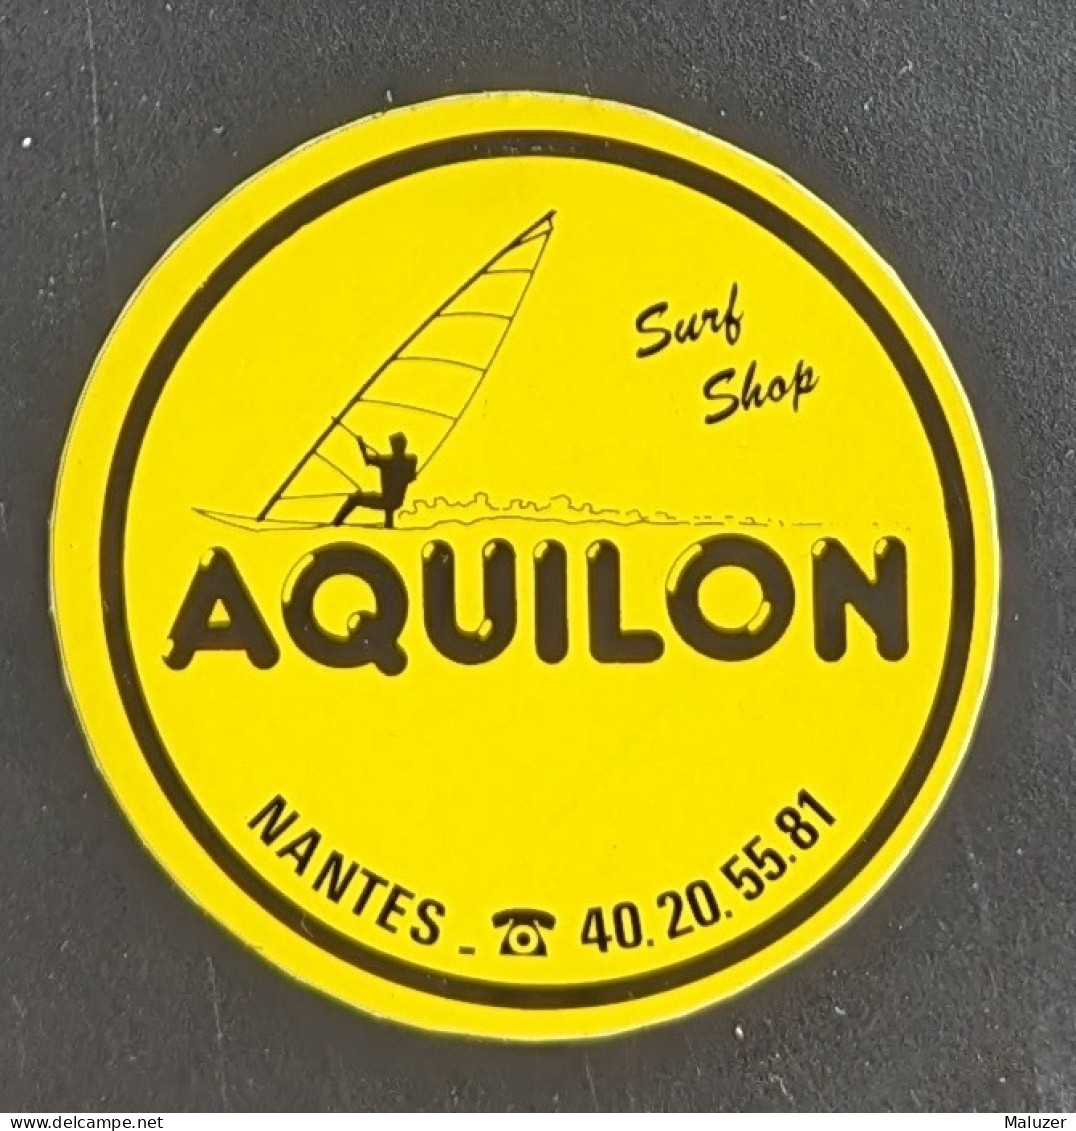 AUTOCOLLANT AQUILON - SURF SHOP - MAGASIN COMMERCE PLANCHE A VOILE -NANTES 44 LOIRE-ATLANTIQUE - SPORT MER - Pegatinas